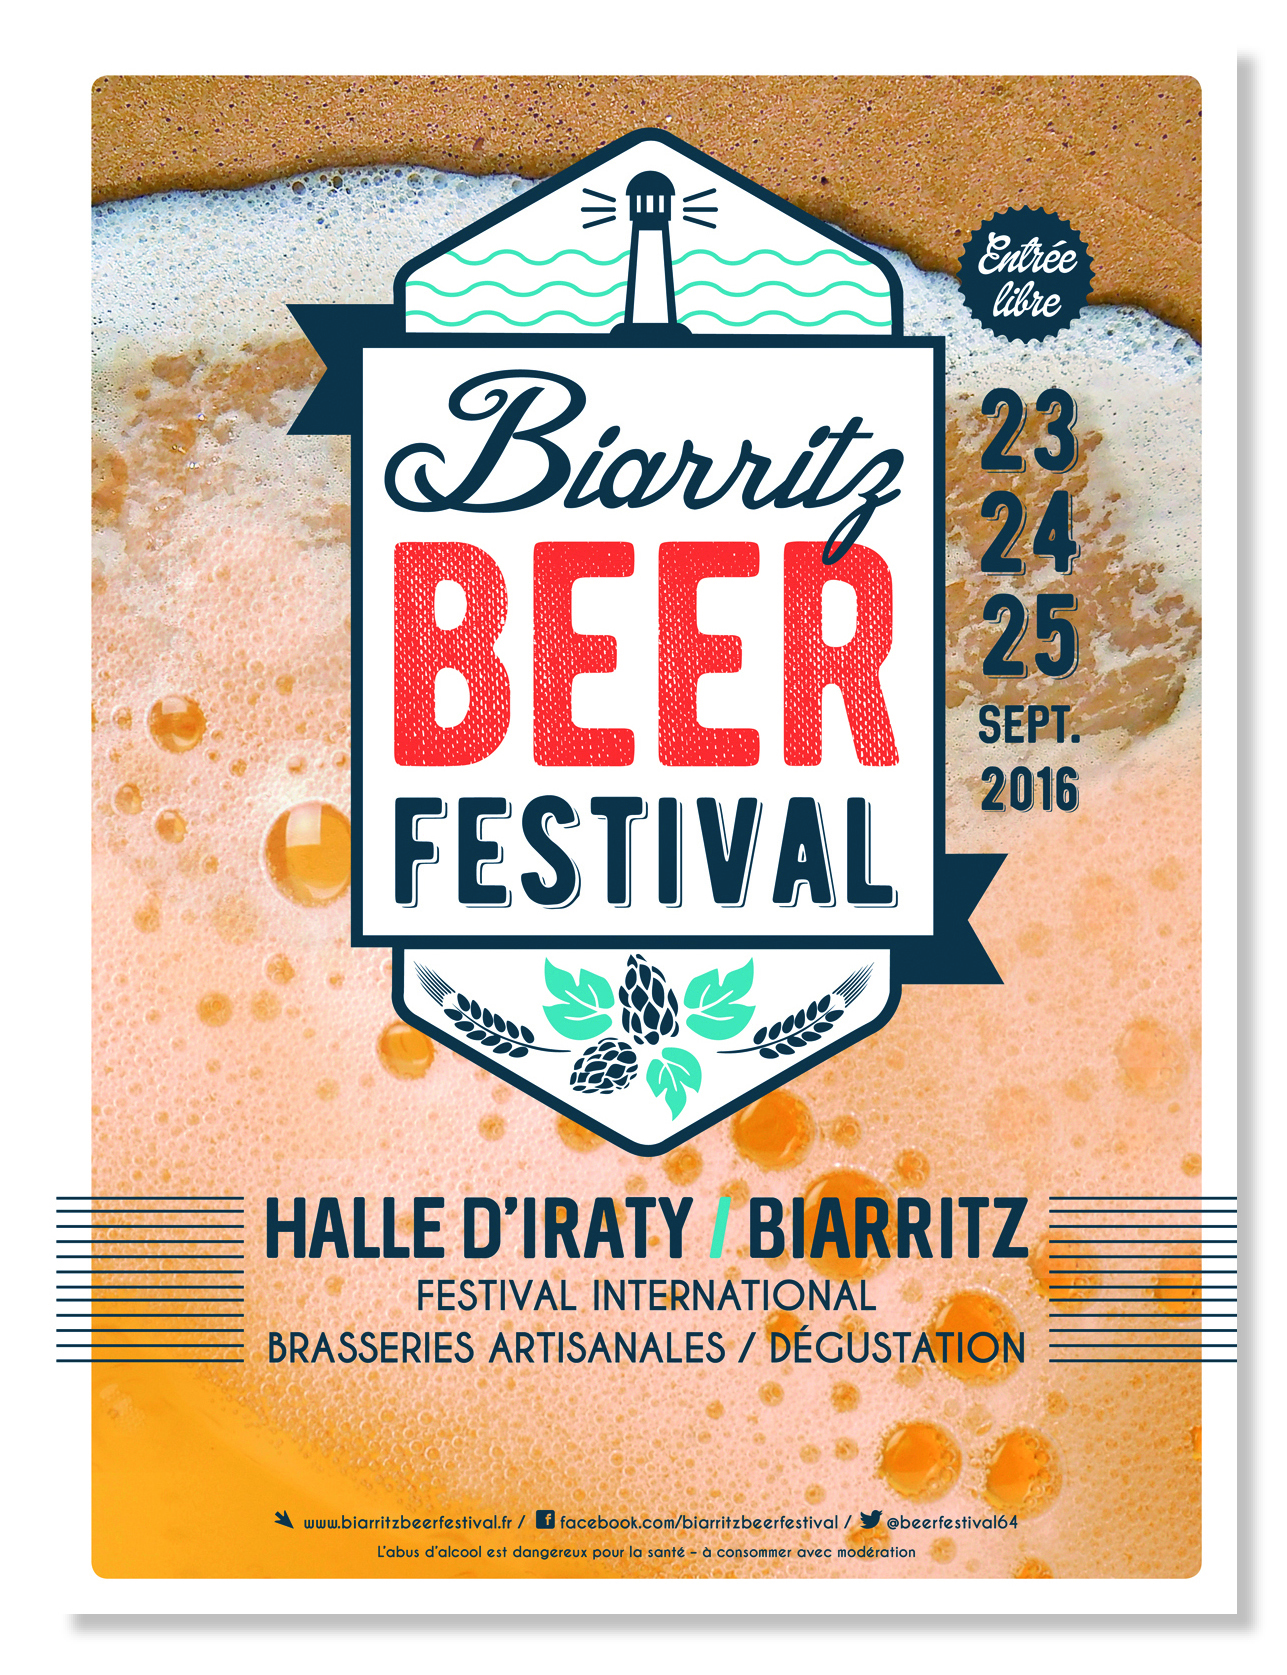 Première édition du Biarritz Beer Festival en Septembre 2016